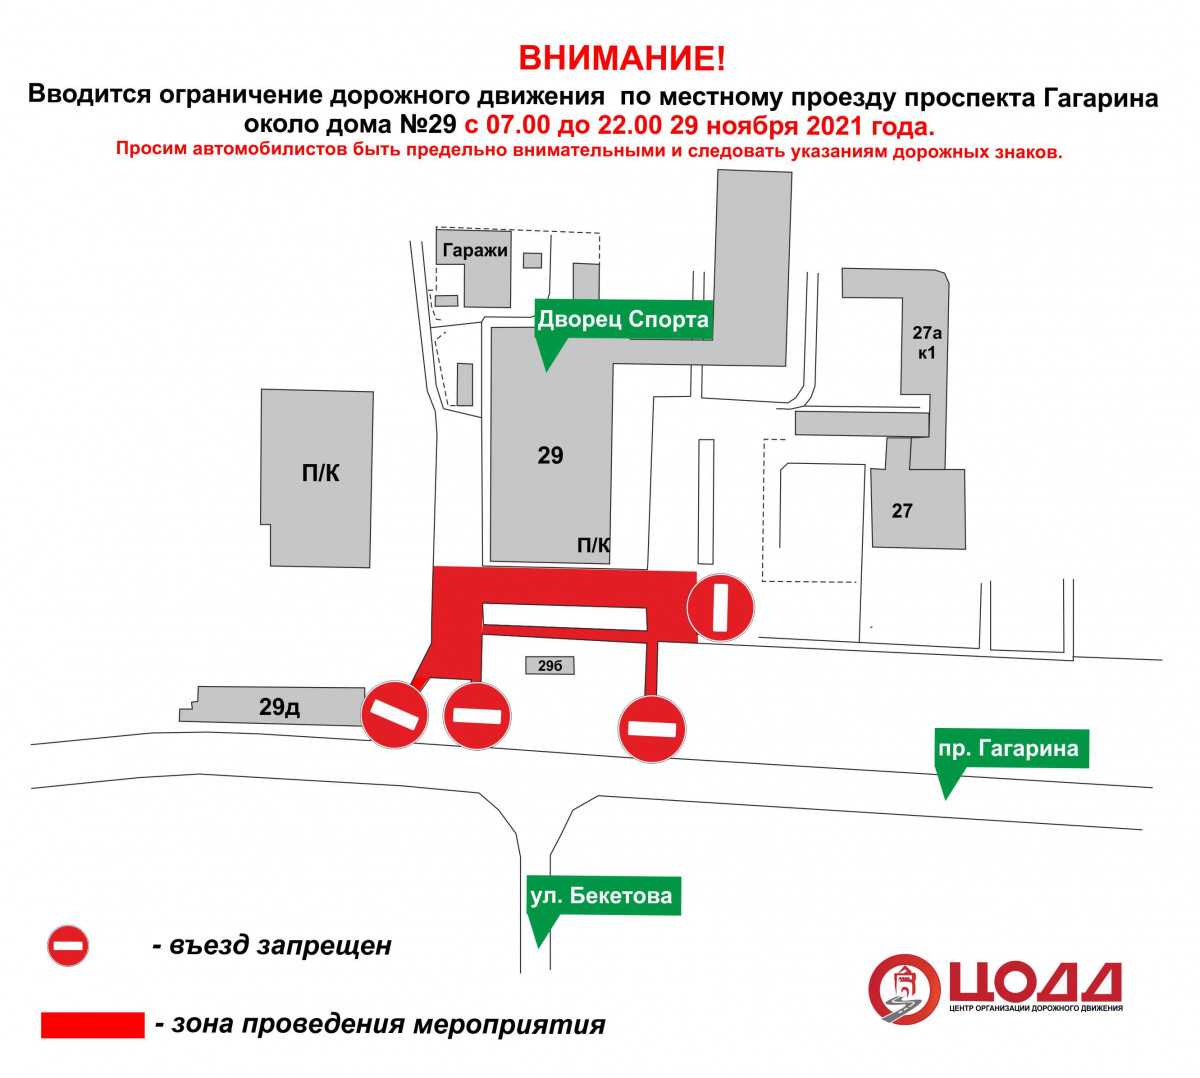 Движение транспорта временно приостановят по местному проезду проспекта Гагарина 29 ноября